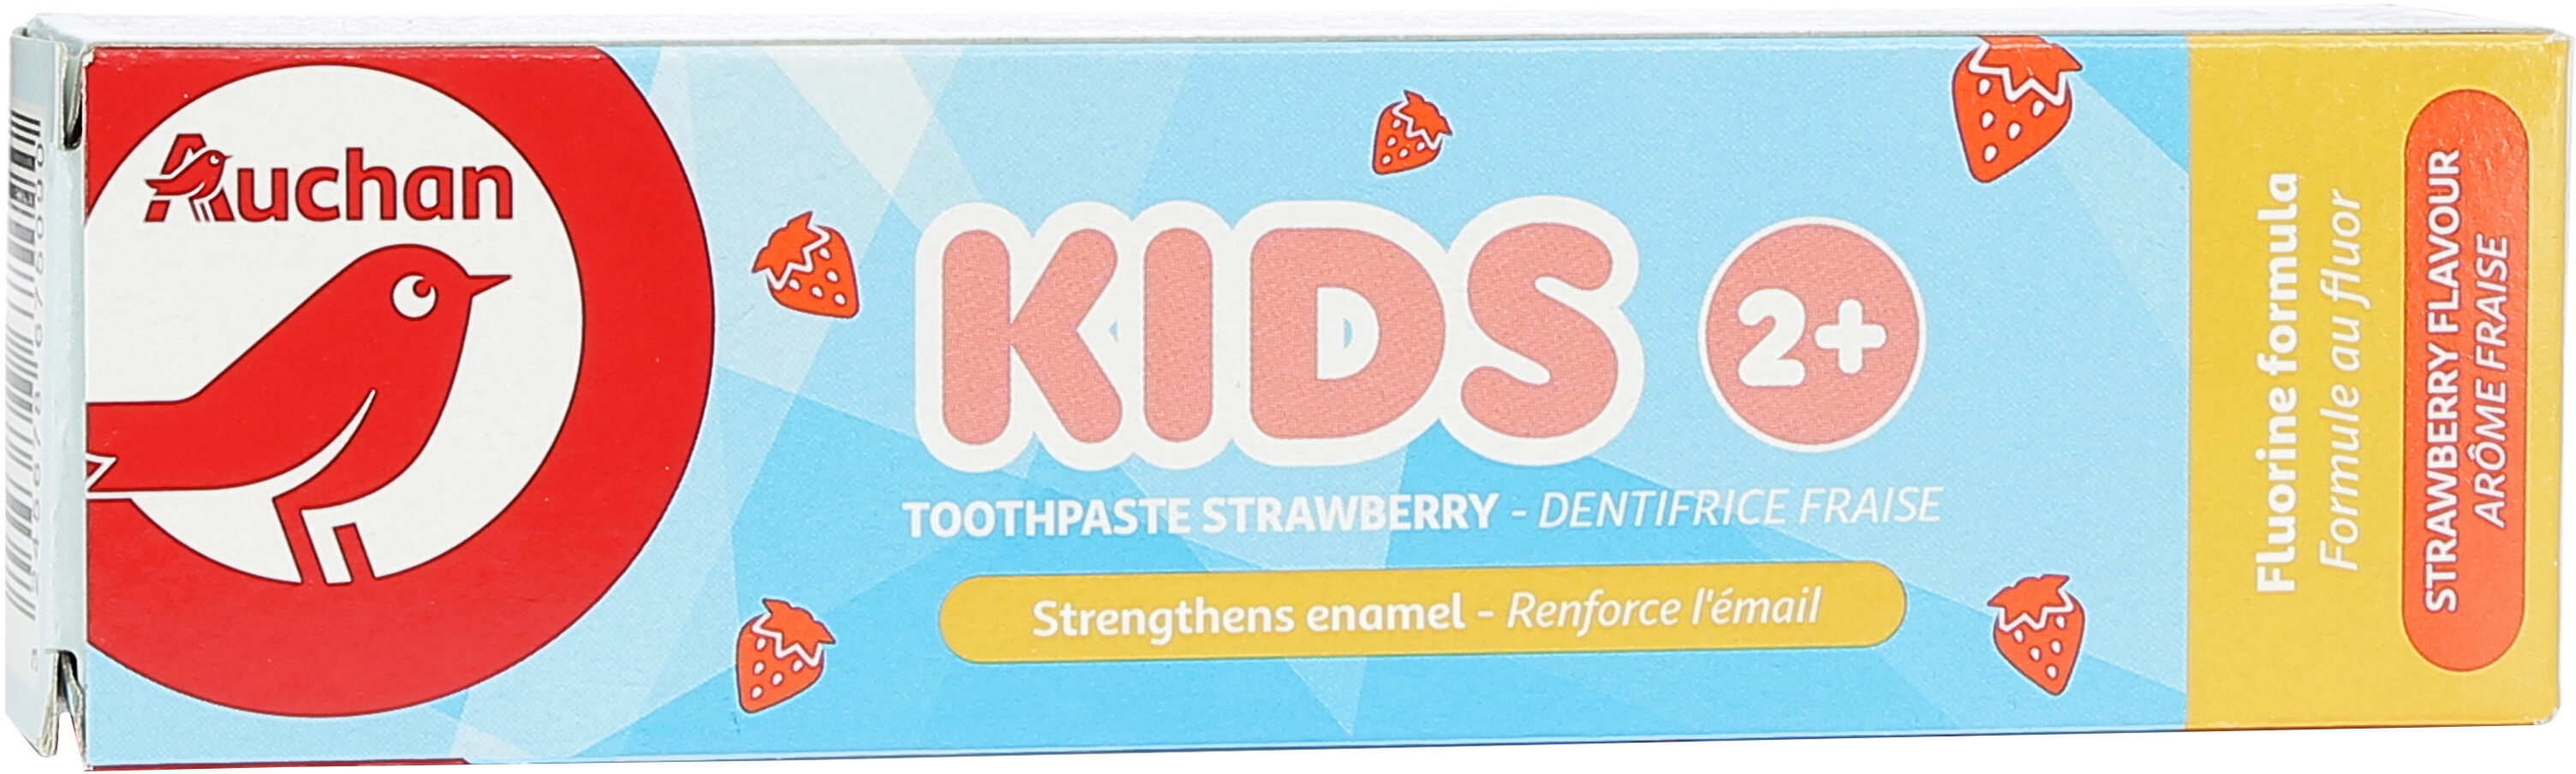 Auchan kids dentifrice - fraise - enfants 2 + - 50ml - Tuote - fr